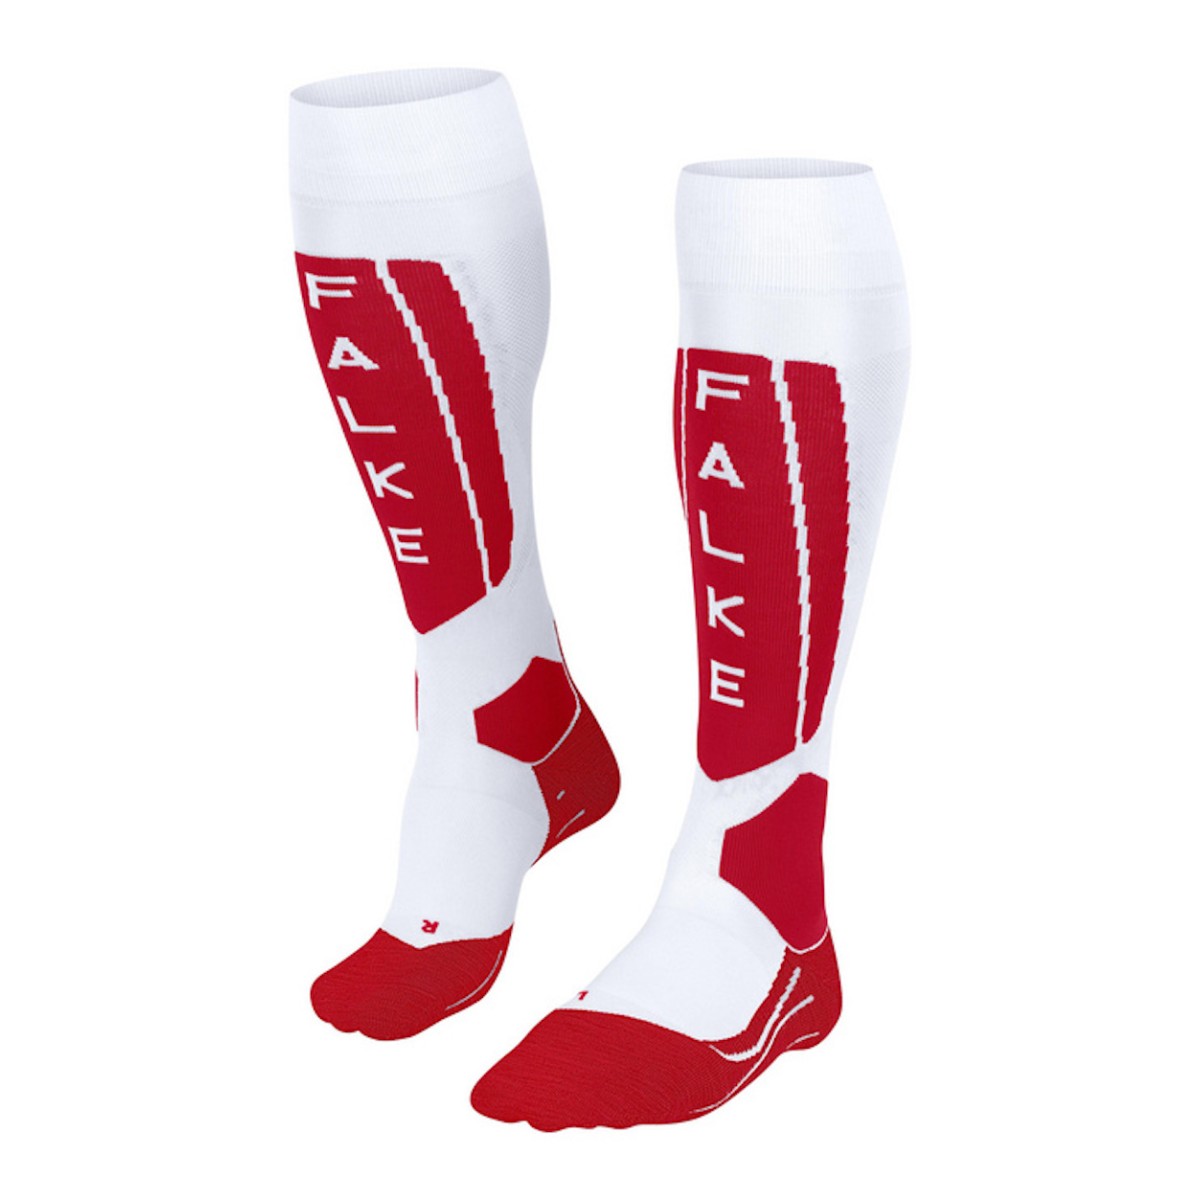 FALKE SK5 SILK WOMEN socks - white/red